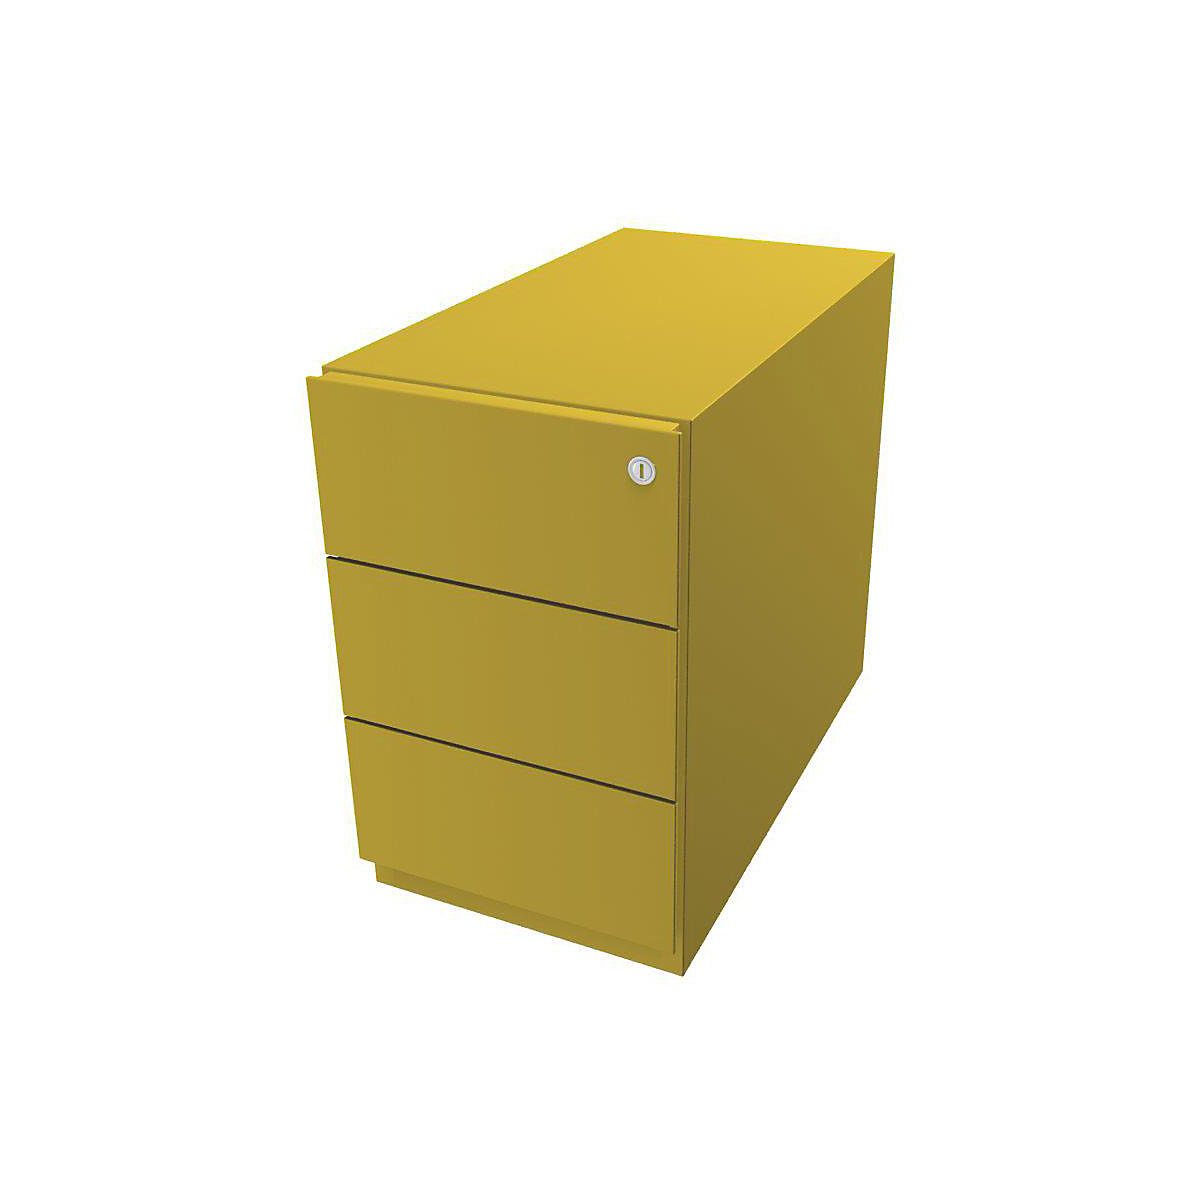 Pojízdný kontejner Note™, se 3 univerzálními zásuvkami – BISLEY, v x š x h 495 x 300 x 565 mm, s úchopnou lištou, žlutá-1